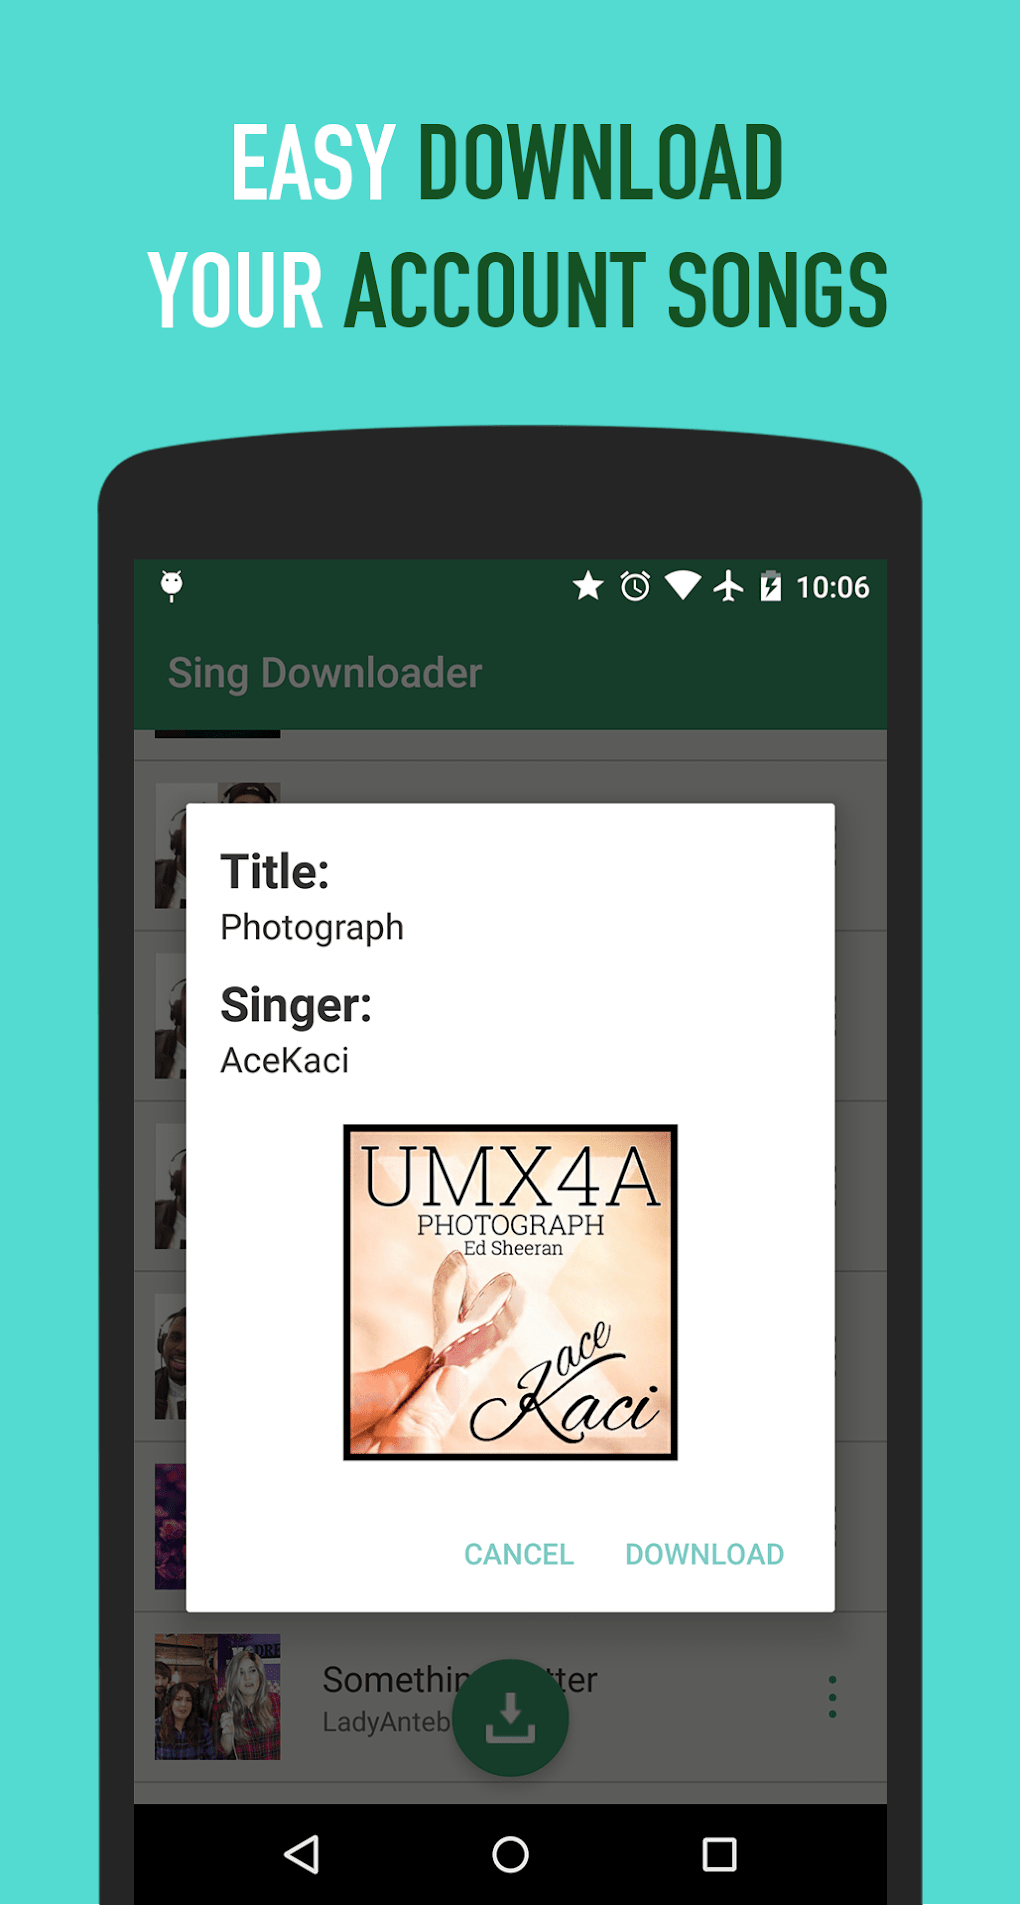 Sing android. Sing me андроид. Почему не работает Sing downloader.